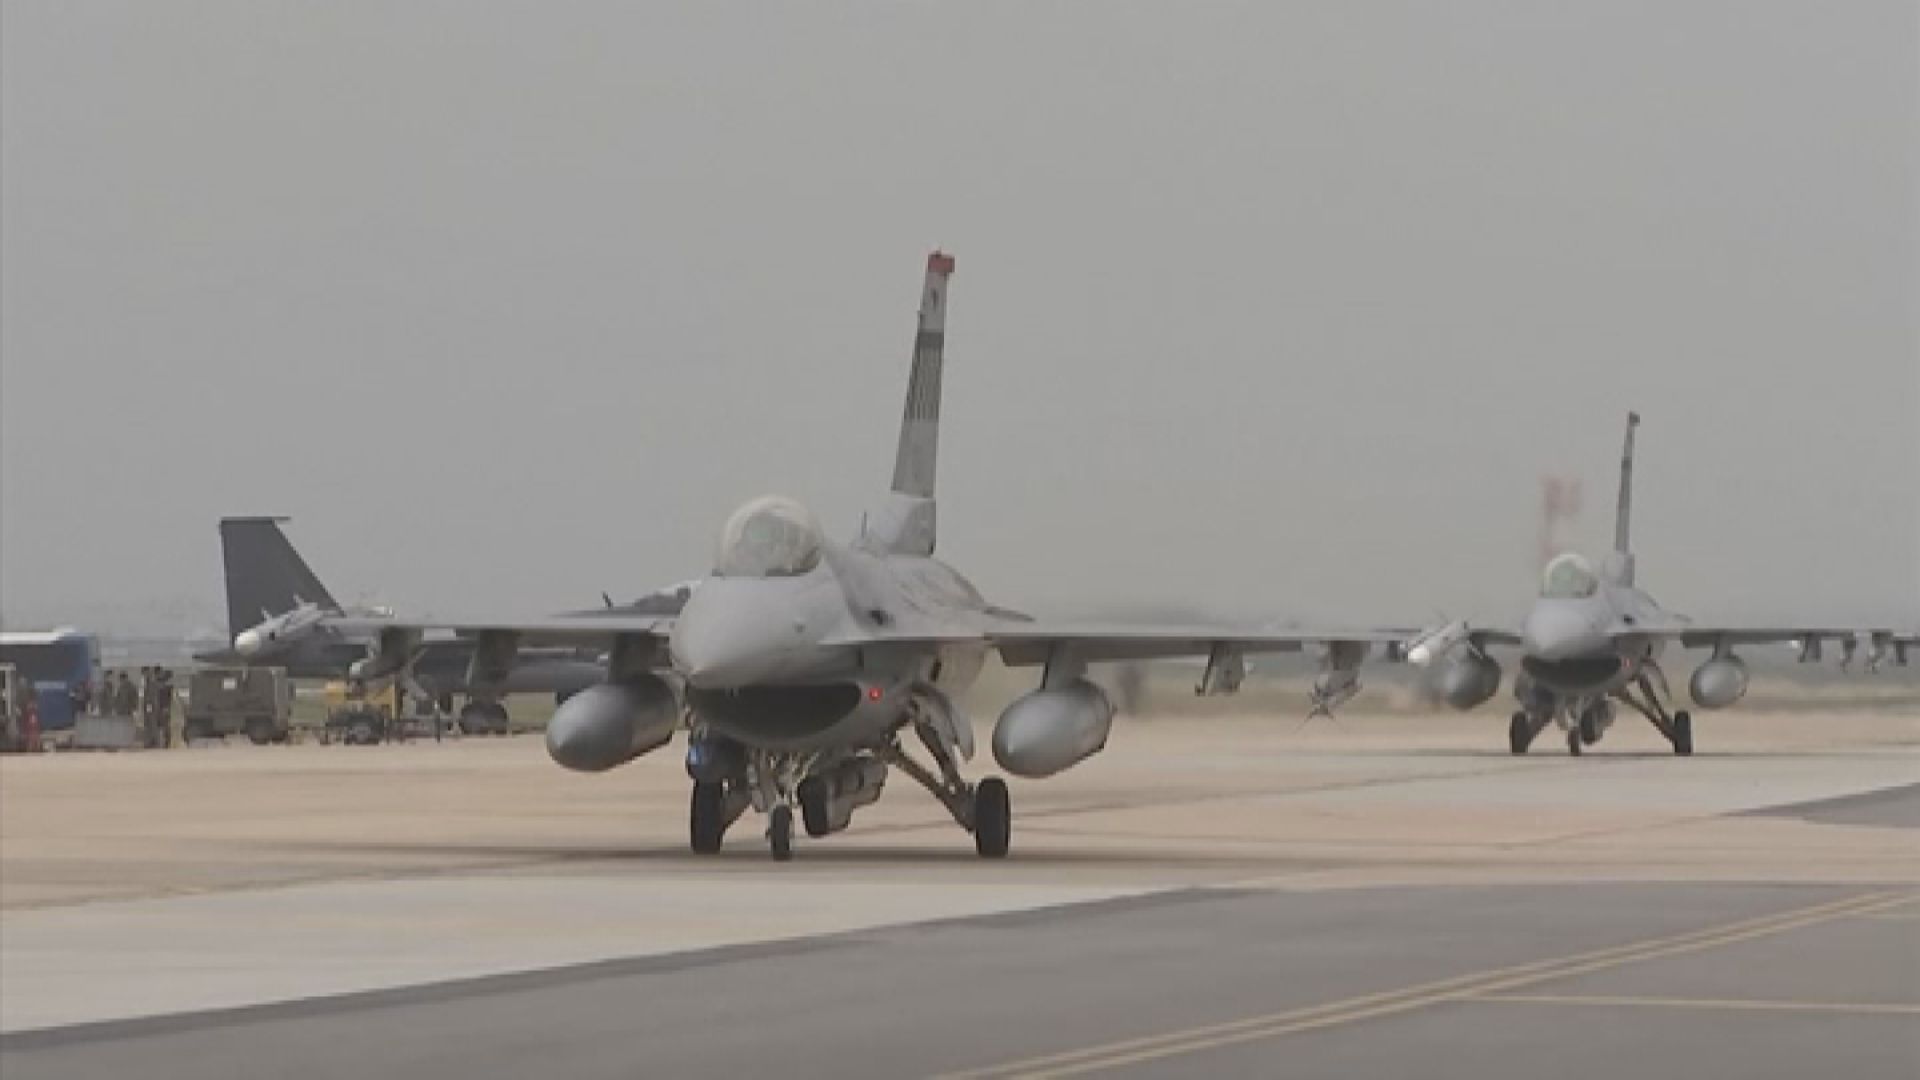 分析指F16戰機宜部署台灣東部應對解放軍頻繁演習